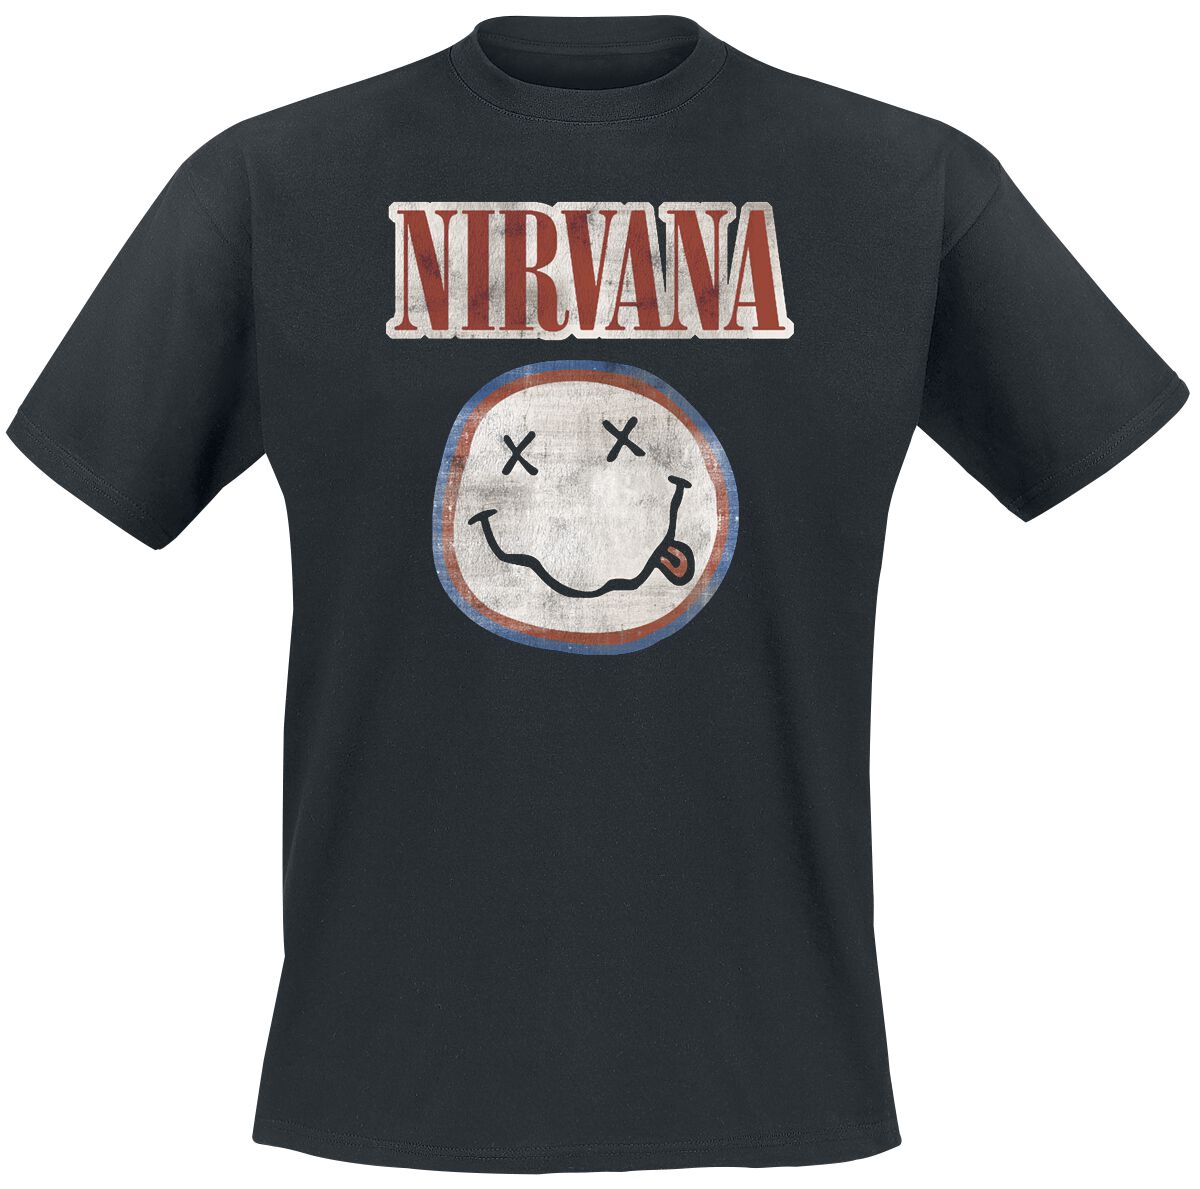 Nirvana T-Shirt - Distressed Logo - S bis XXL - für Männer - Größe S - schwarz  - Lizenziertes Merchandise!